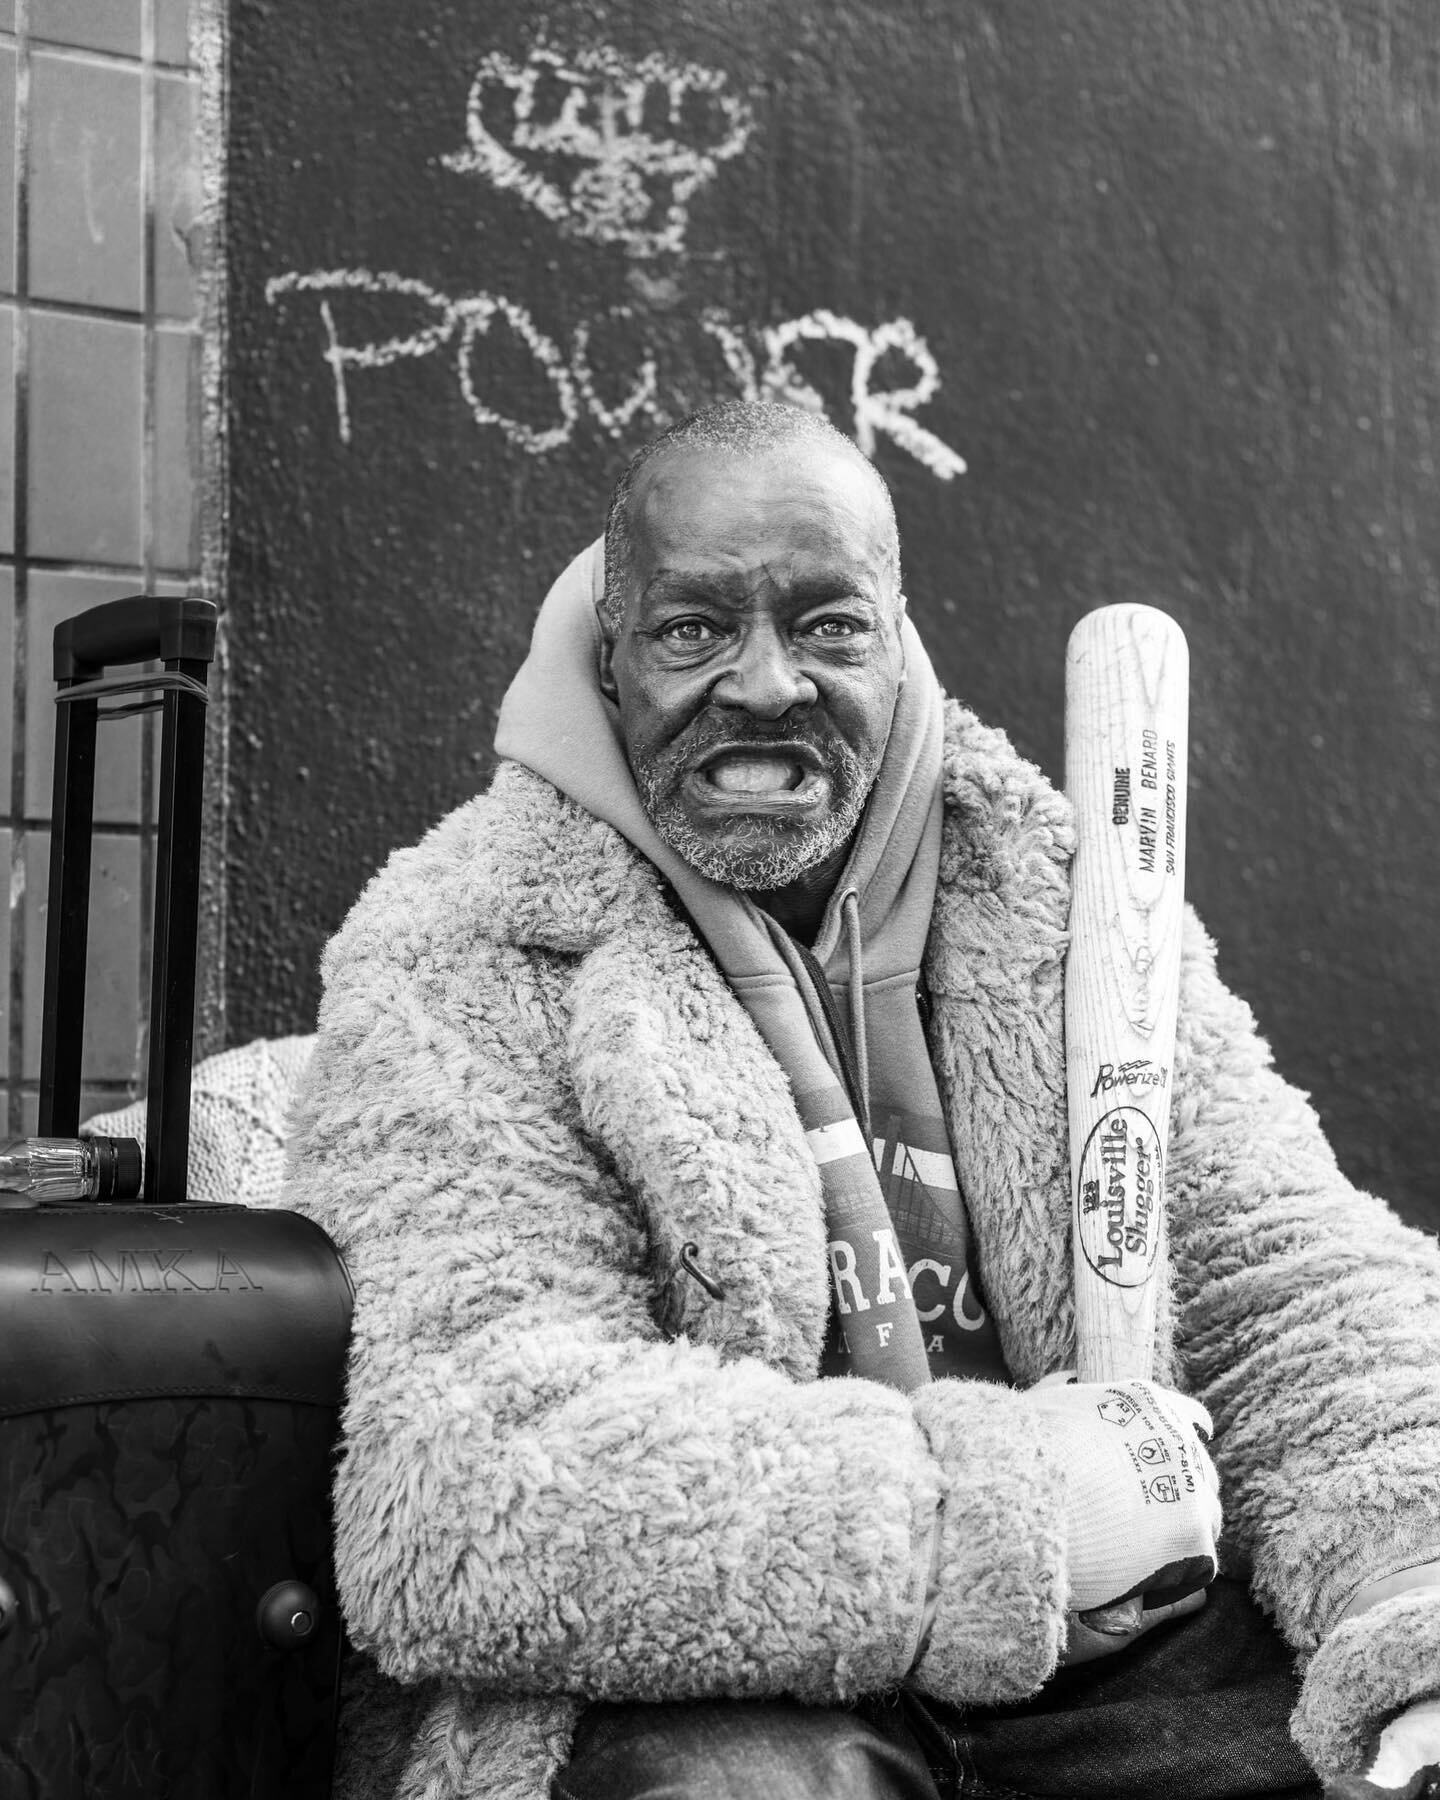 Jerome aka hyphy
.
Ferocity 
.
Downtown Sf
.
.
May 2023
.

.

San Francisco , Ca 2023
.

#street_macadam  #ic_portrait #portrait photography #portraits_life #sanfrancisco #streetphotography_bw #bnw #streetlife #ig_captures #bnwportrait #bnw_captures 